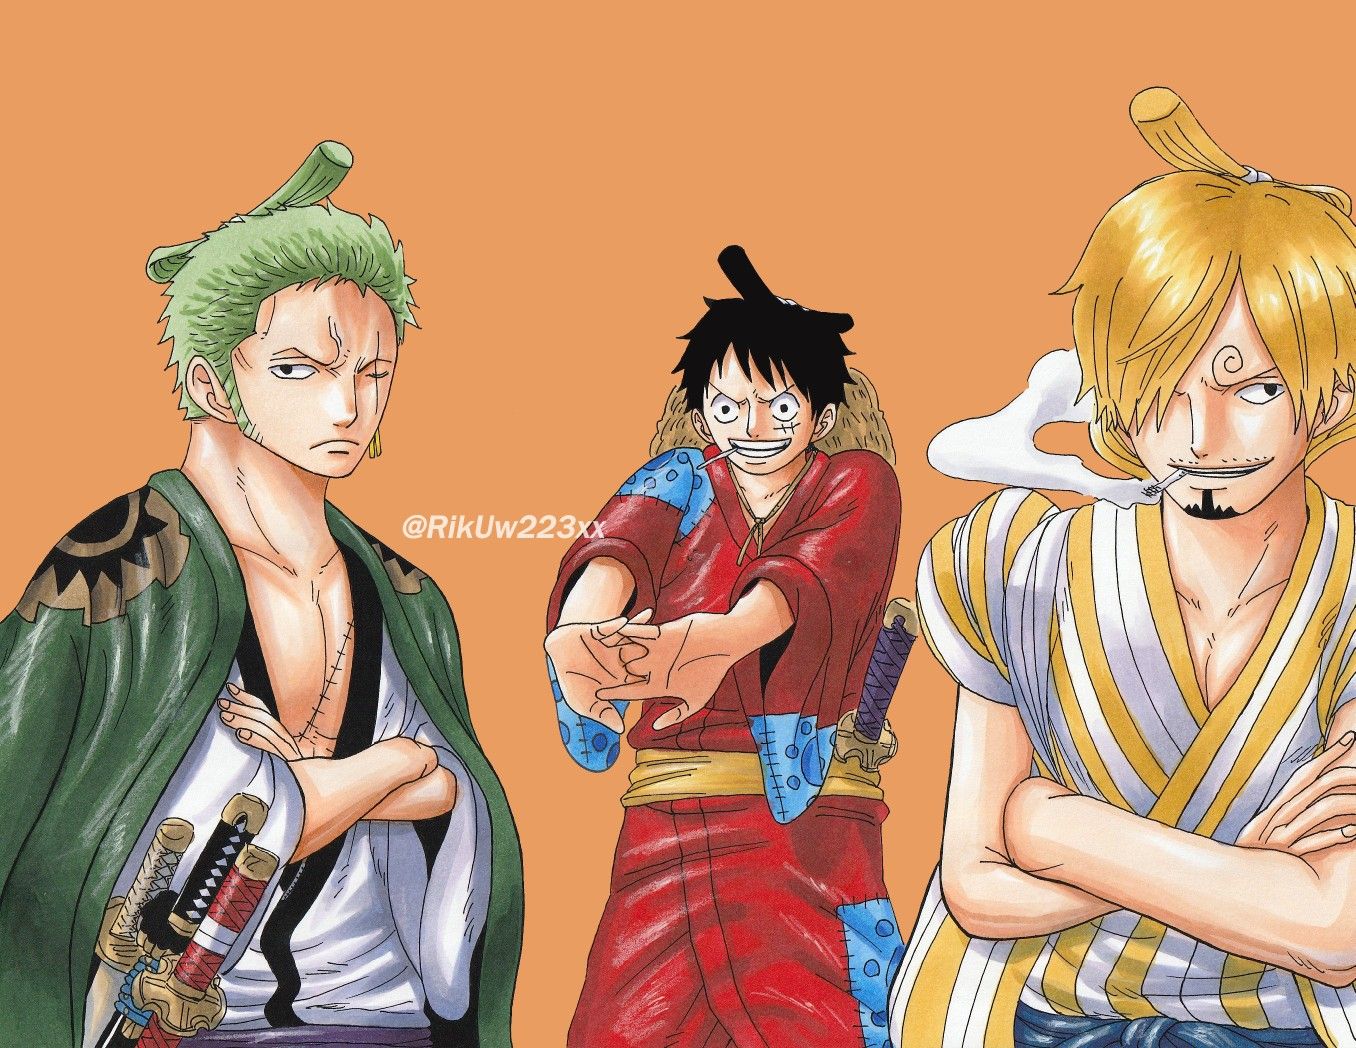 Nếu bạn là fan của One Piece, thì chắc chắn không thể bỏ qua top 5 nhân vật yêu thích trong tác phẩm này. Đó là những nhân vật xuất sắc, có tính cách độc đáo và sẵn sàng hy sinh cho đồng đội. Hãy cùng xem hình ảnh của họ để hiểu thêm về tình cảm mà người hâm mộ dành cho họ.